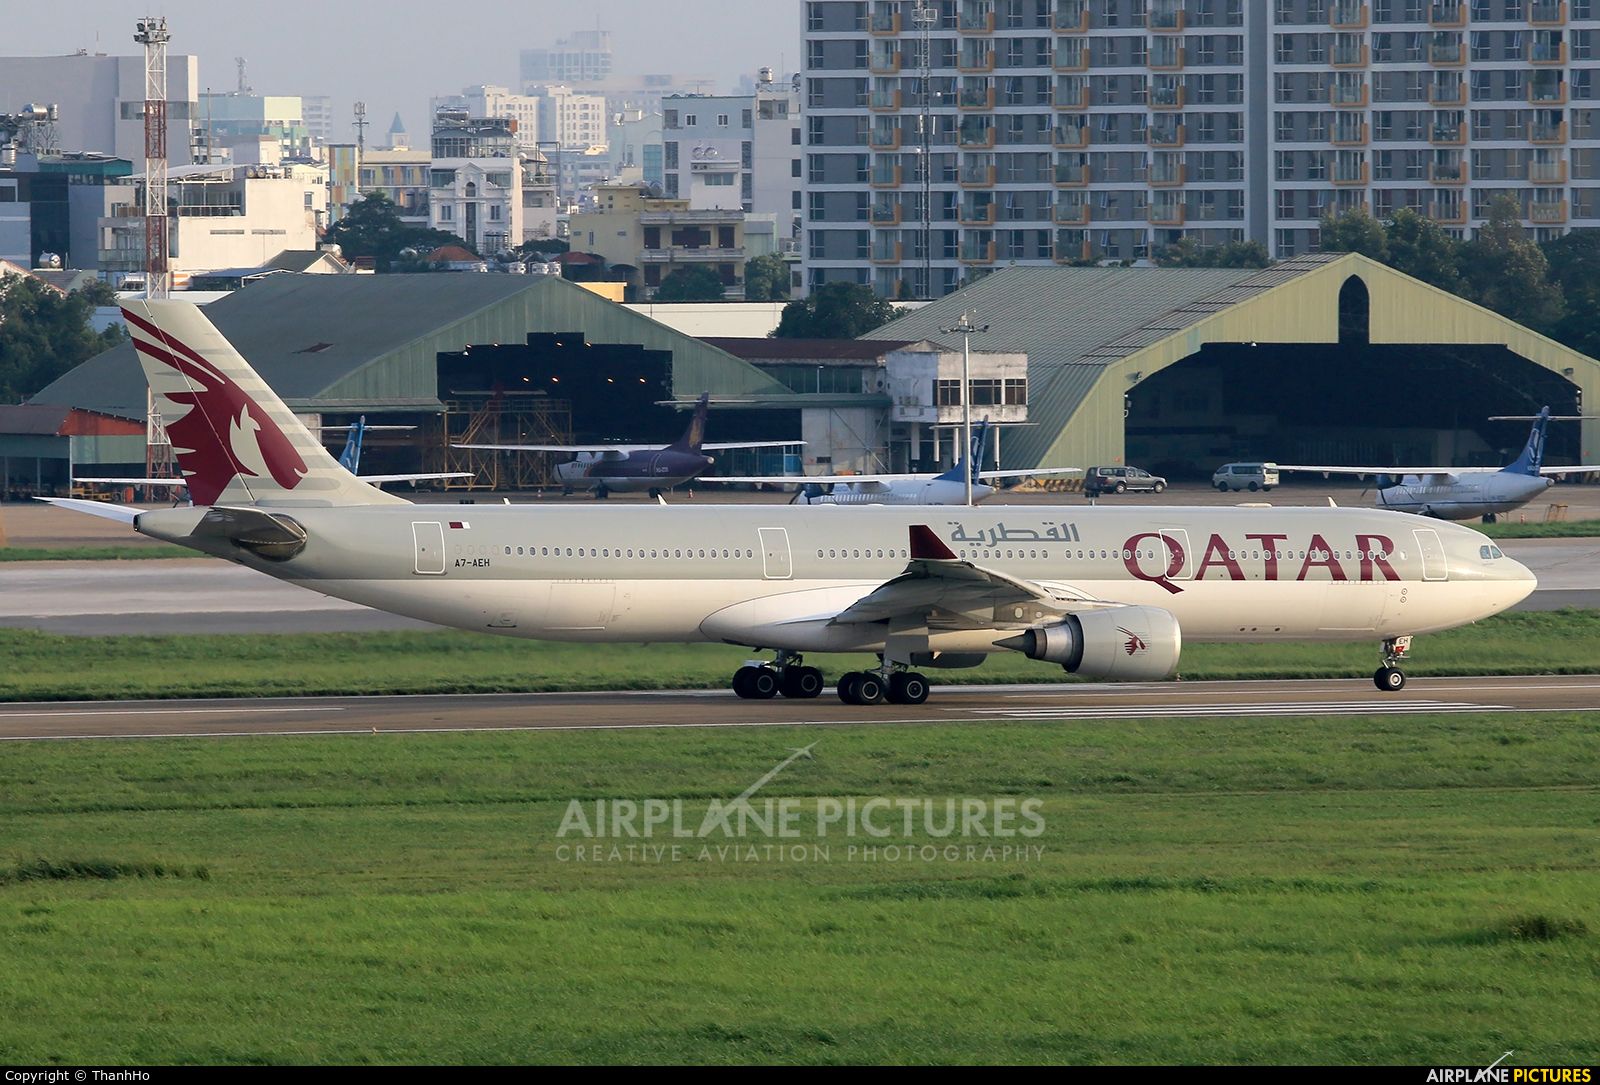 Qatar Airways A7-AEH aircraft at Ho Chi Minh City - Tan Son Nhat Intl